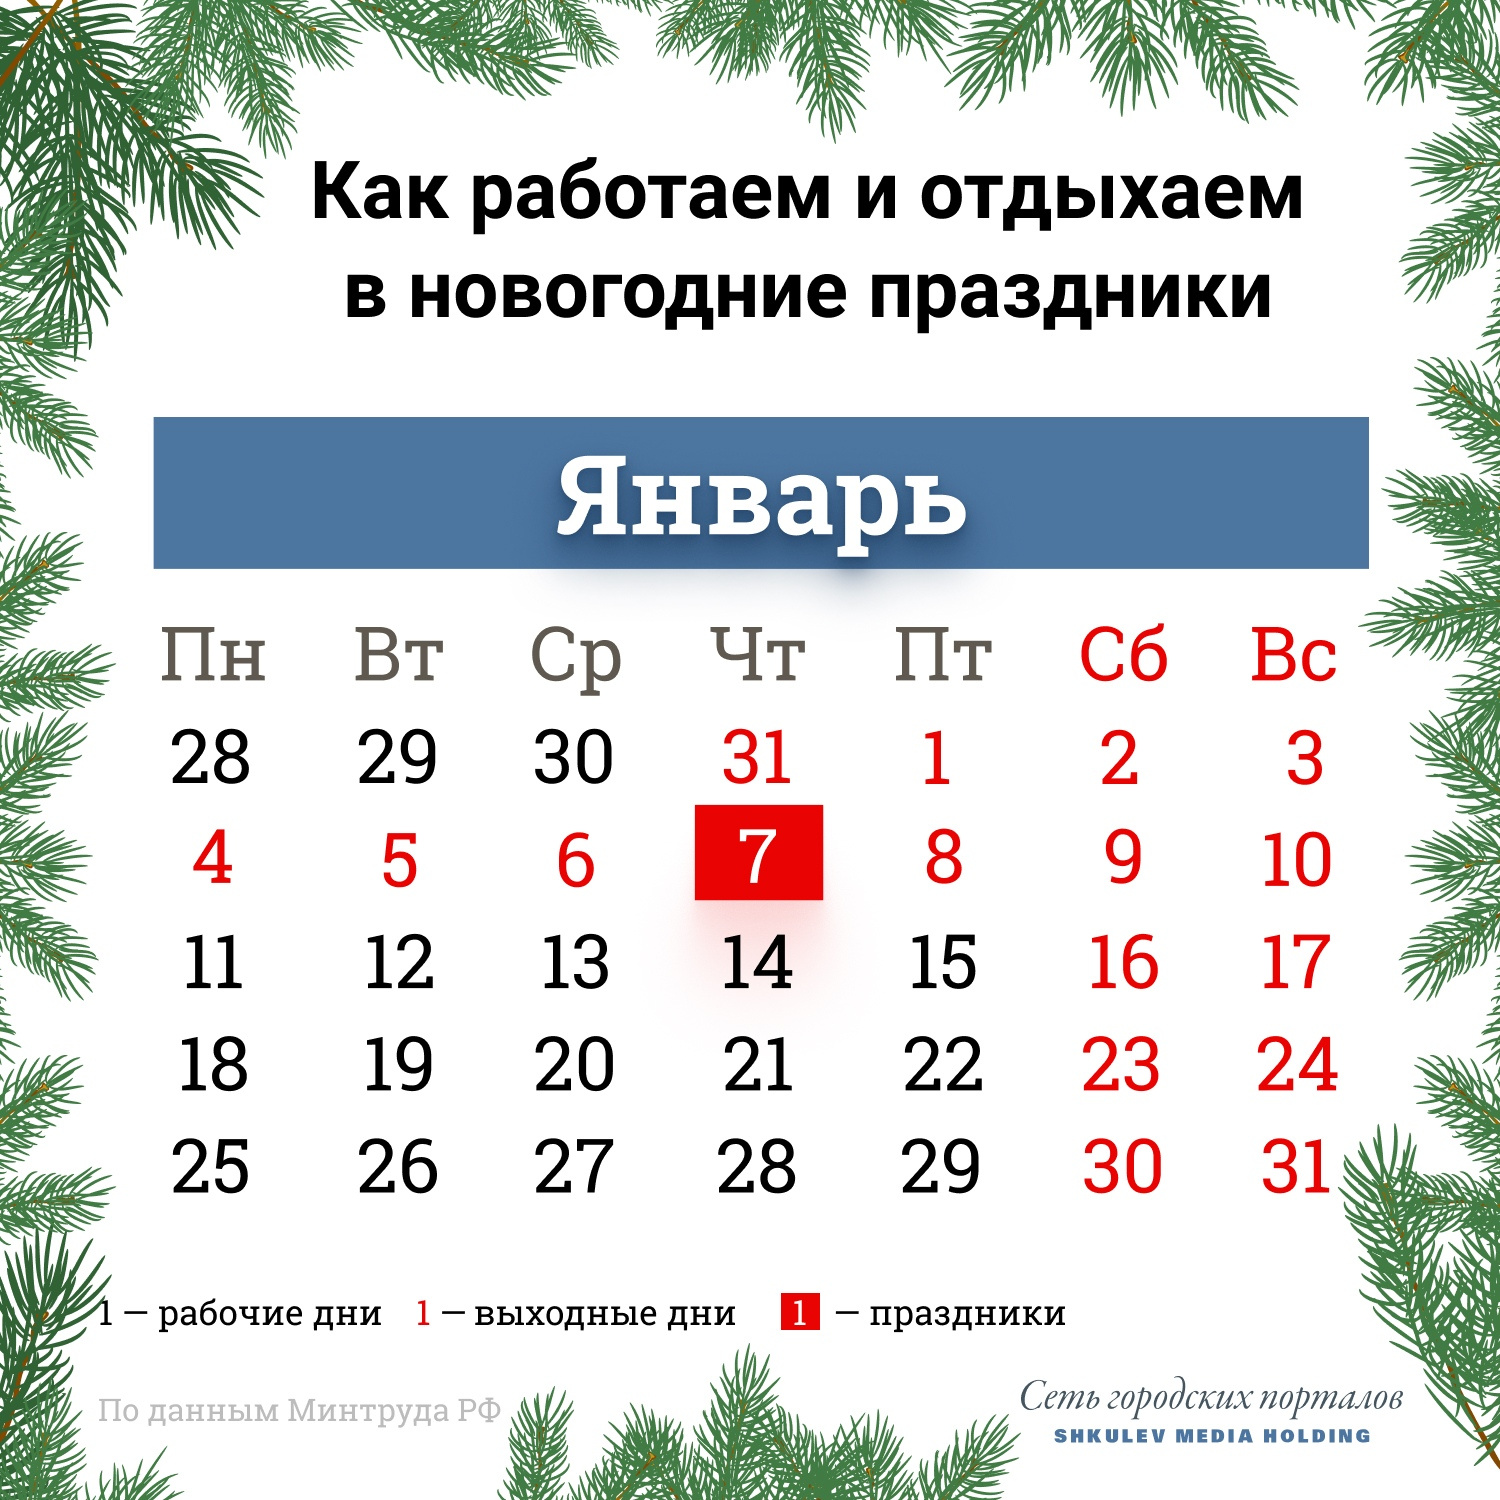 26 декабря будет рабочим днем. А с 31 декабря по 10 января будут выходные